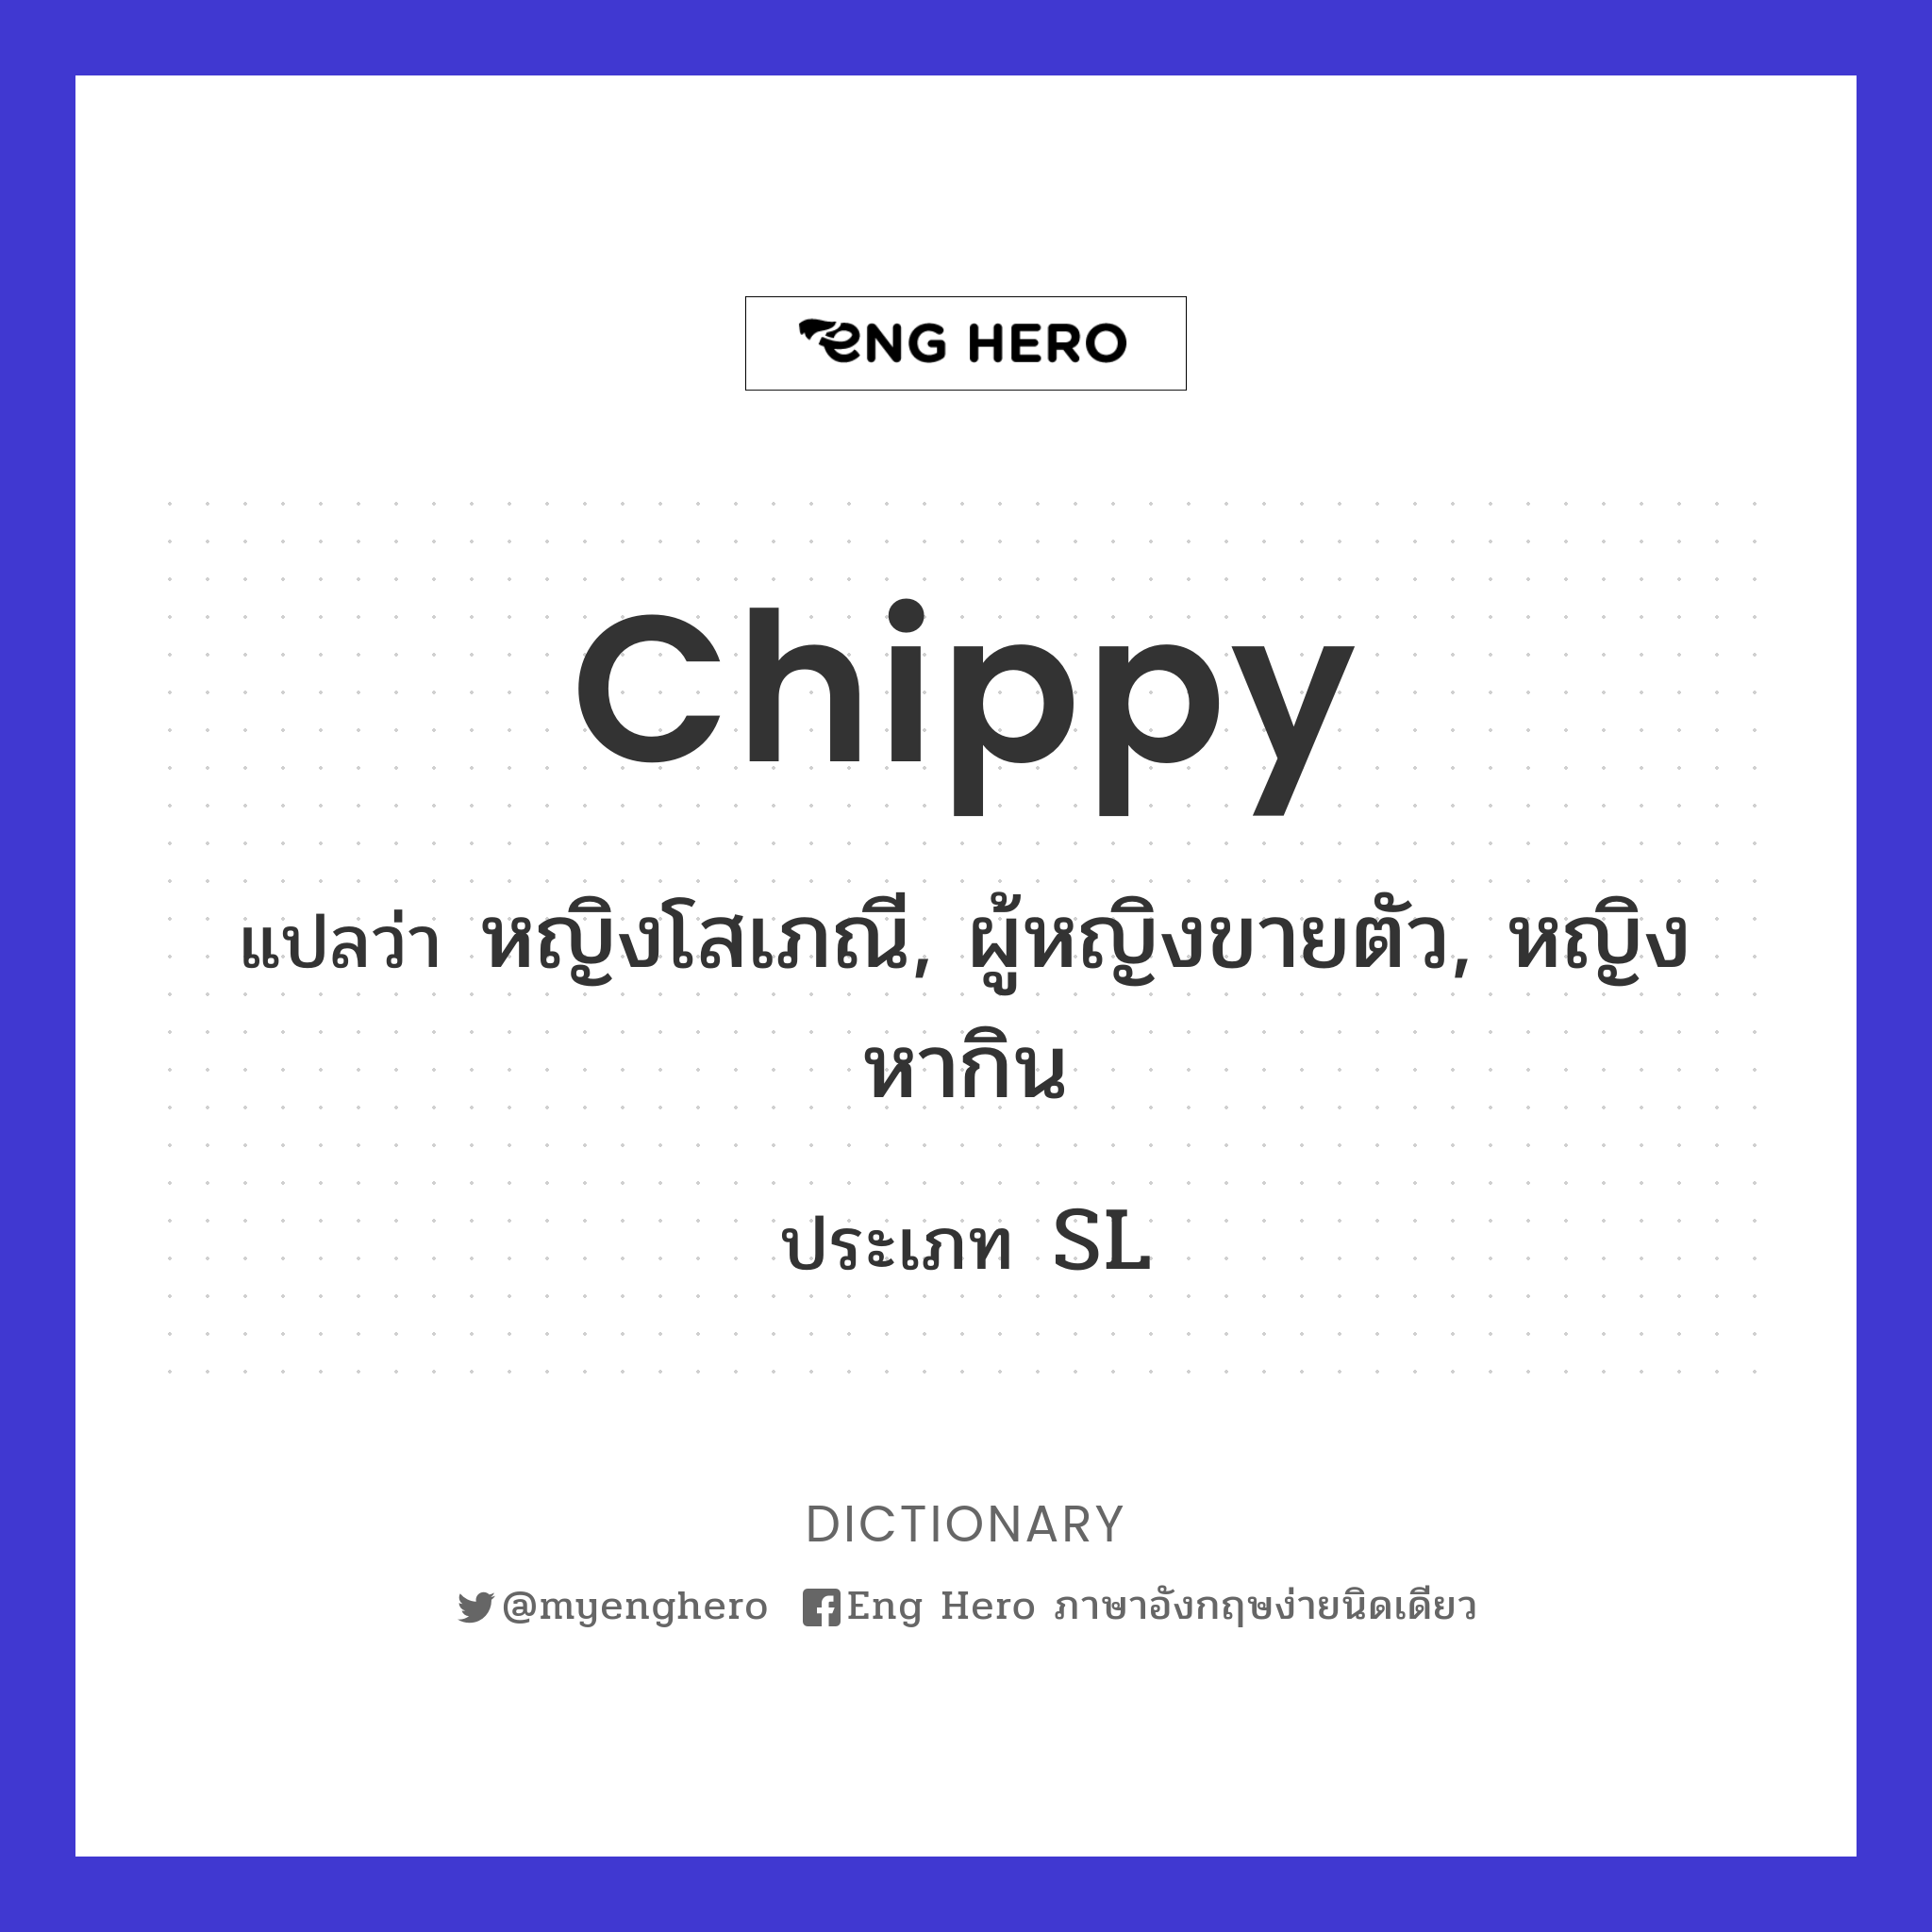 chippy